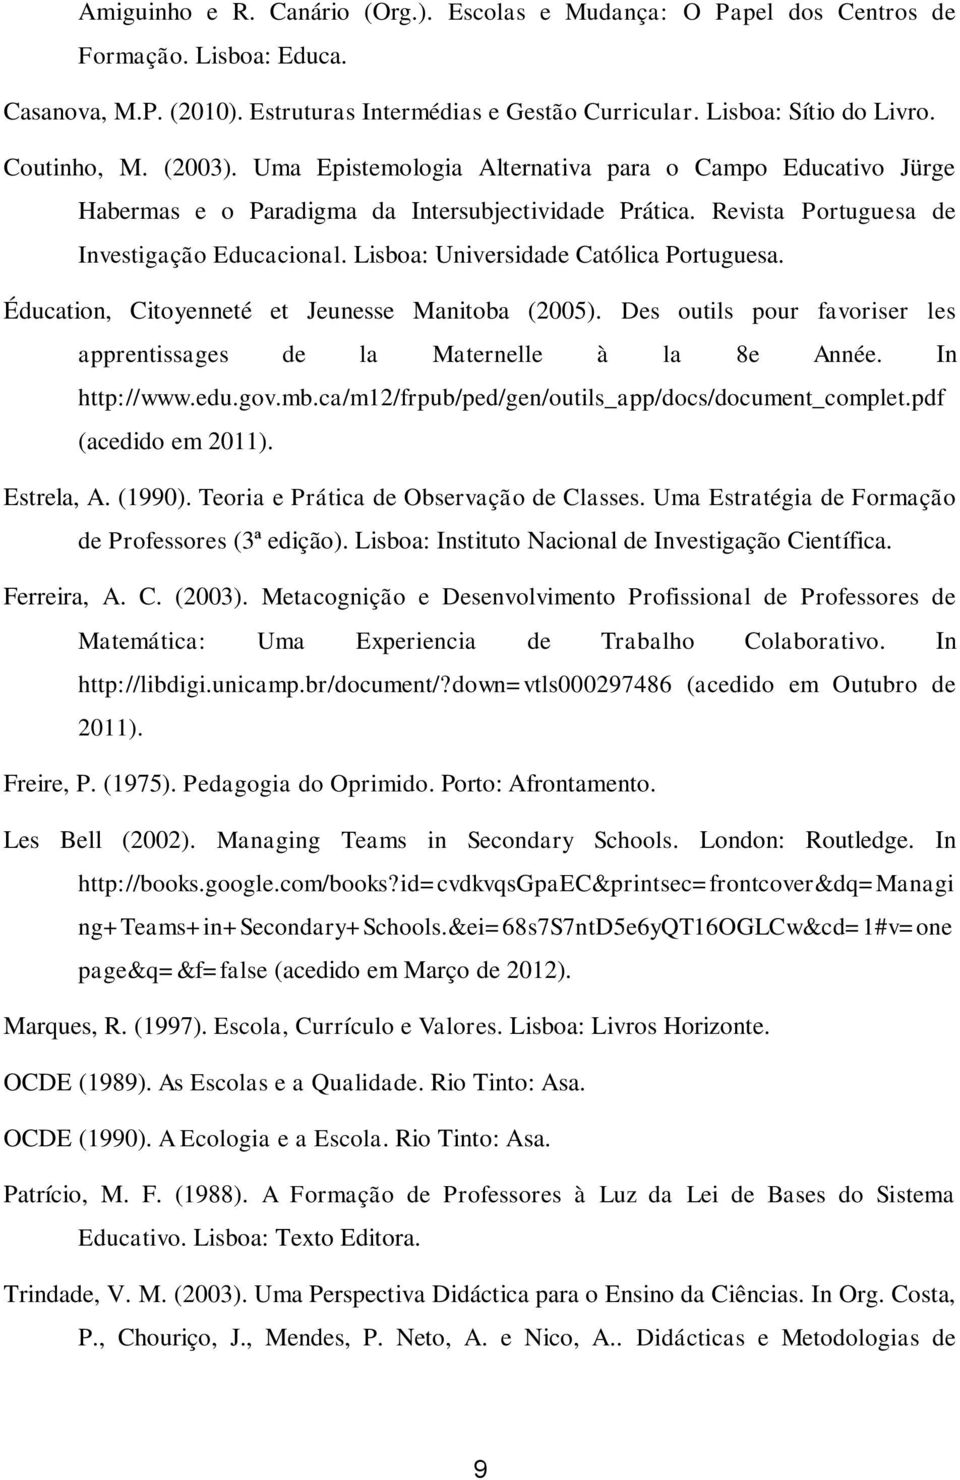 Lisboa: Universidade Católica Portuguesa. Éducation, Citoyenneté et Jeunesse Manitoba (2005). Des outils pour favoriser les apprentissages de la Maternelle à la 8e Année. In http://www.edu.gov.mb.